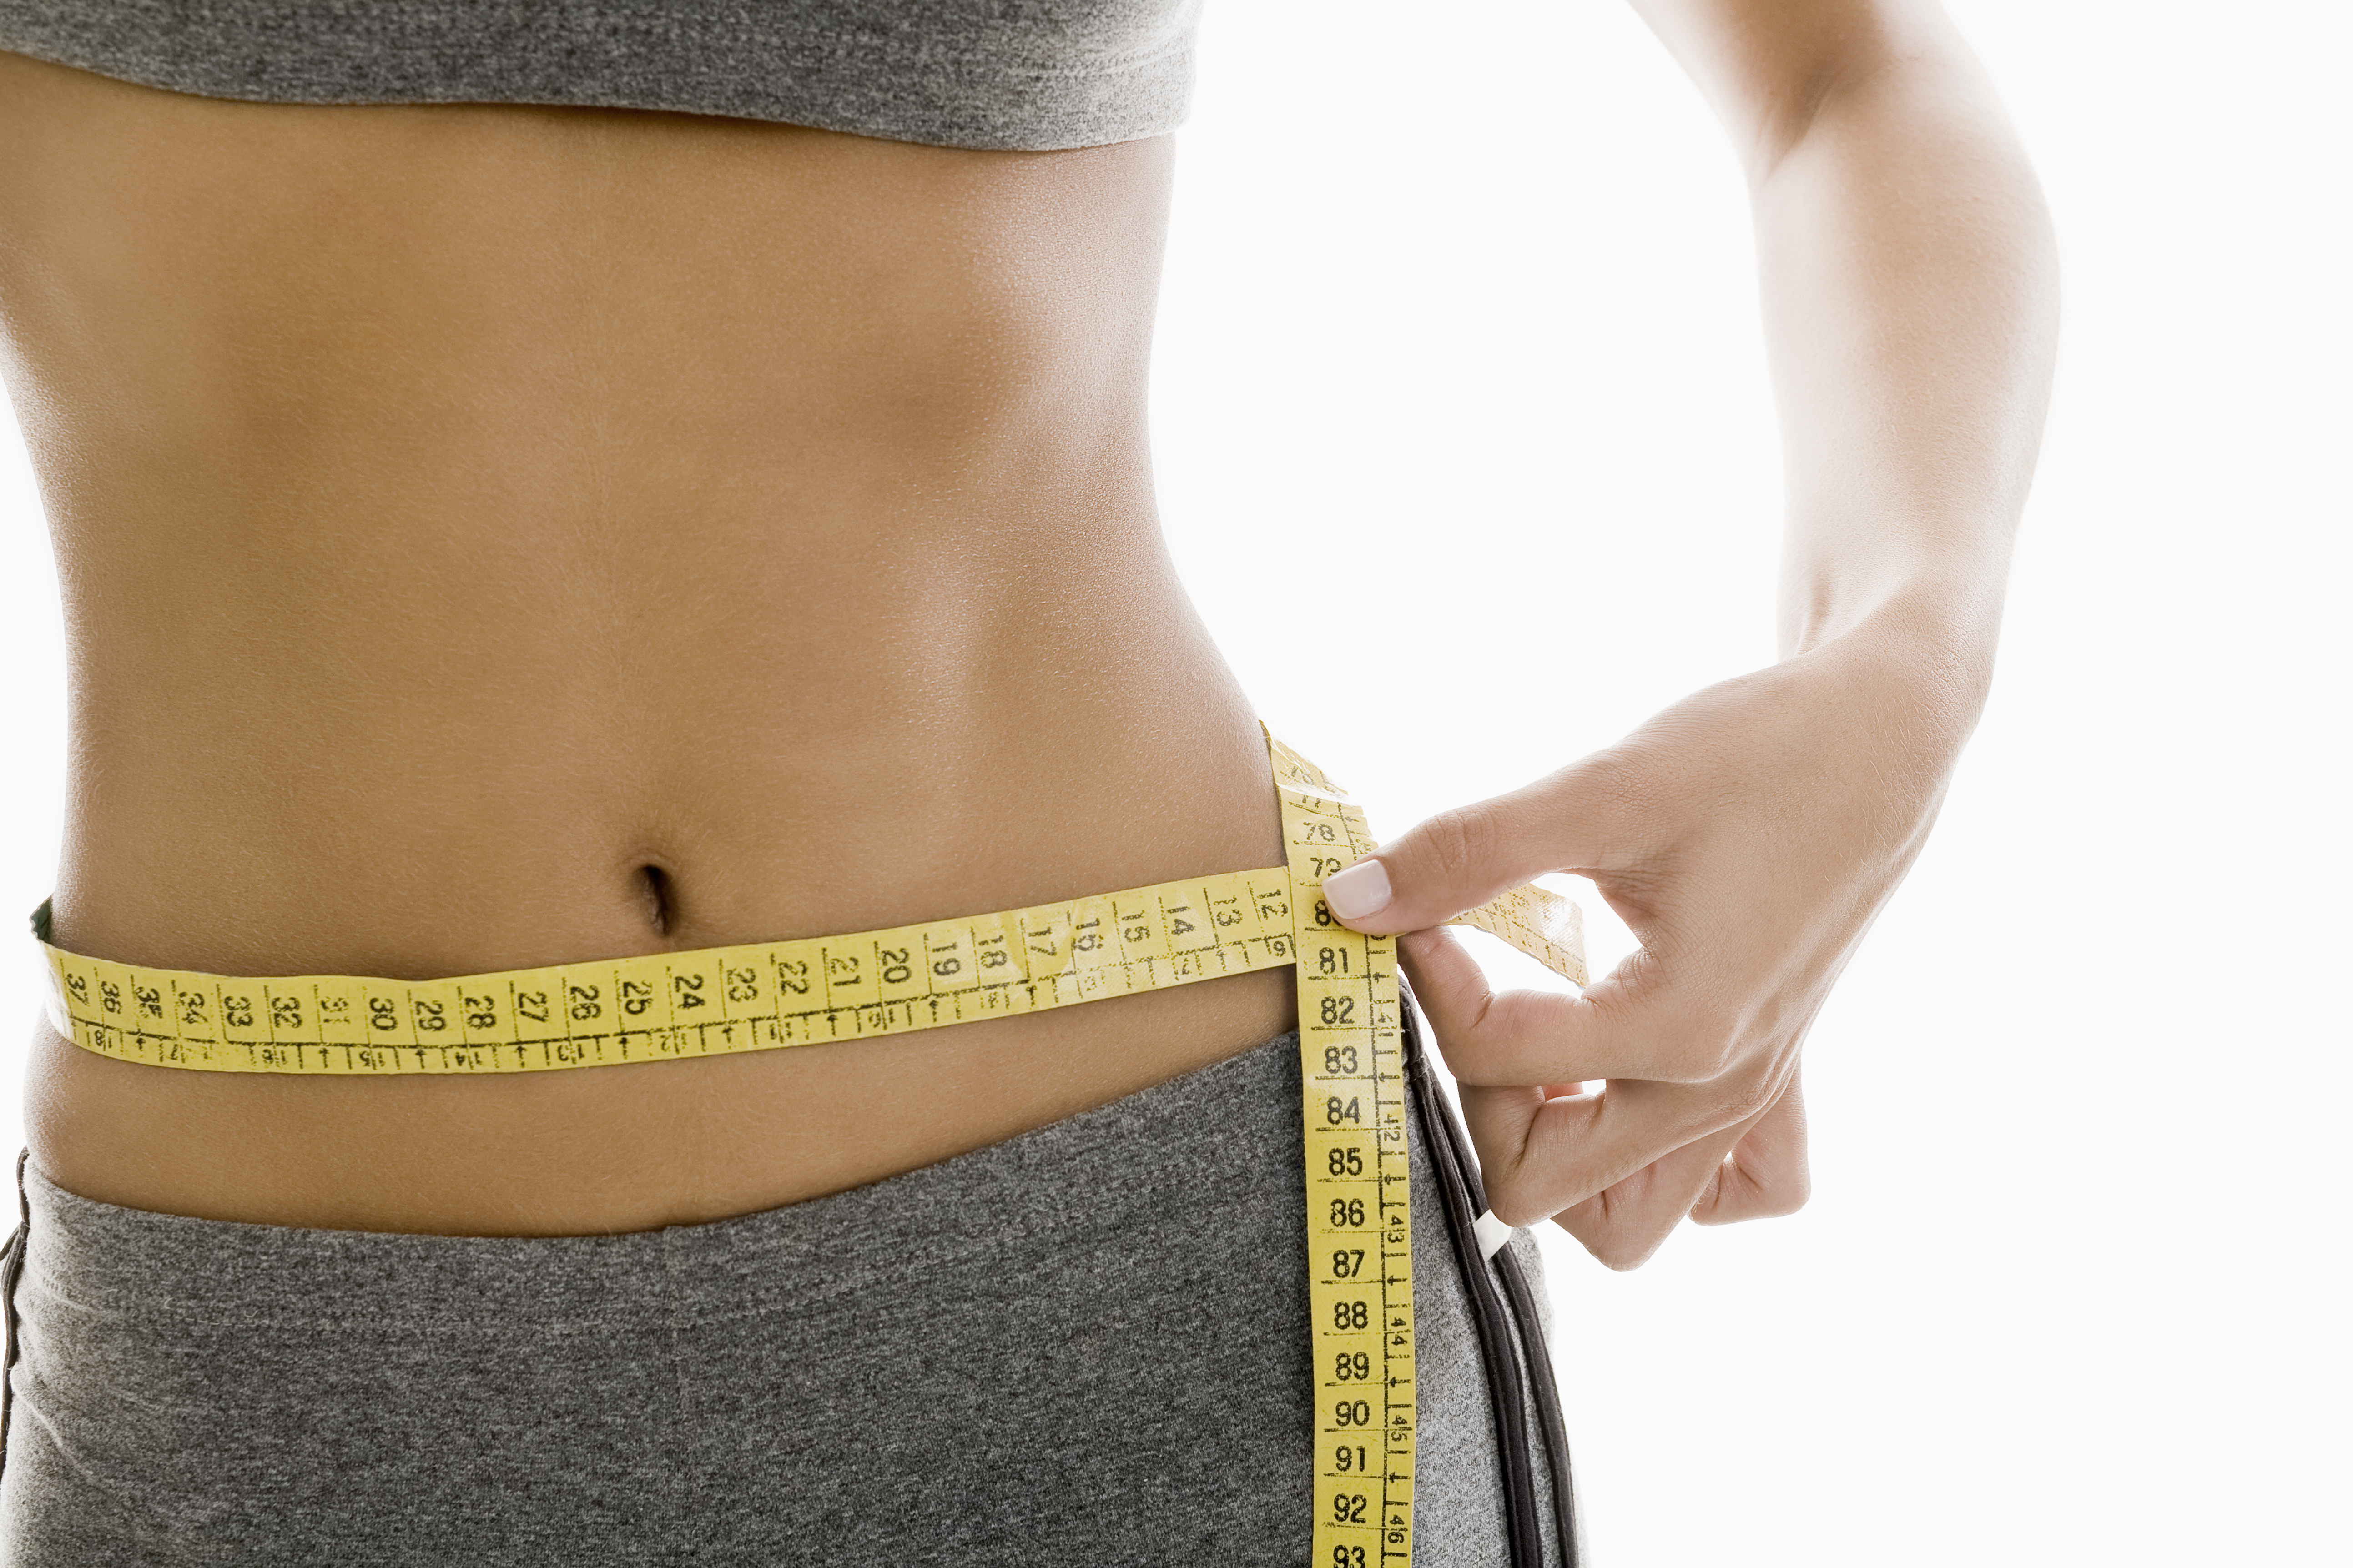 Pierderea în greutate poate provoca o perioadă pierdută, Sbs la scăderea în greutate a cererii